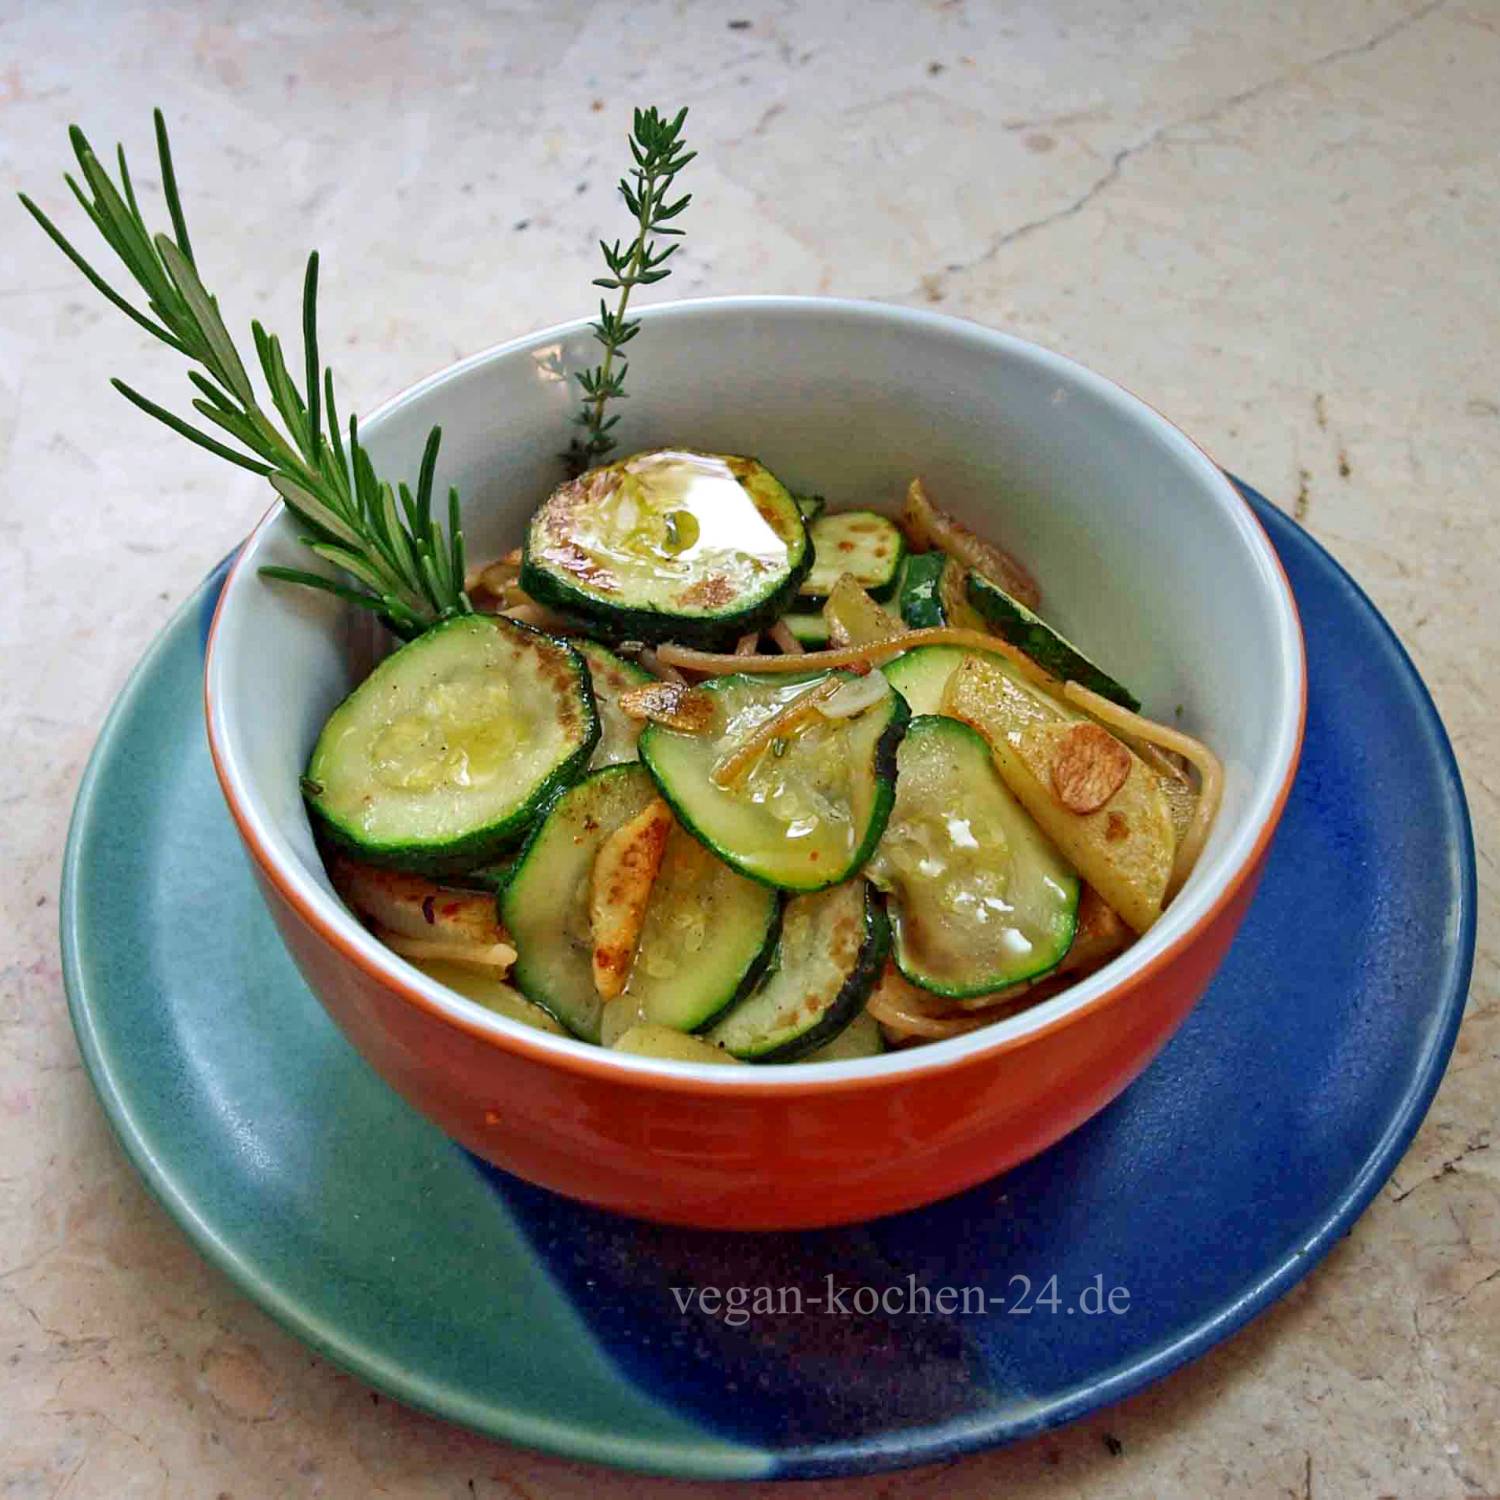 Schnelle vegane Rezepte mit Nudeln, Kartoffeln und Zucchini auf mediterrane Art.